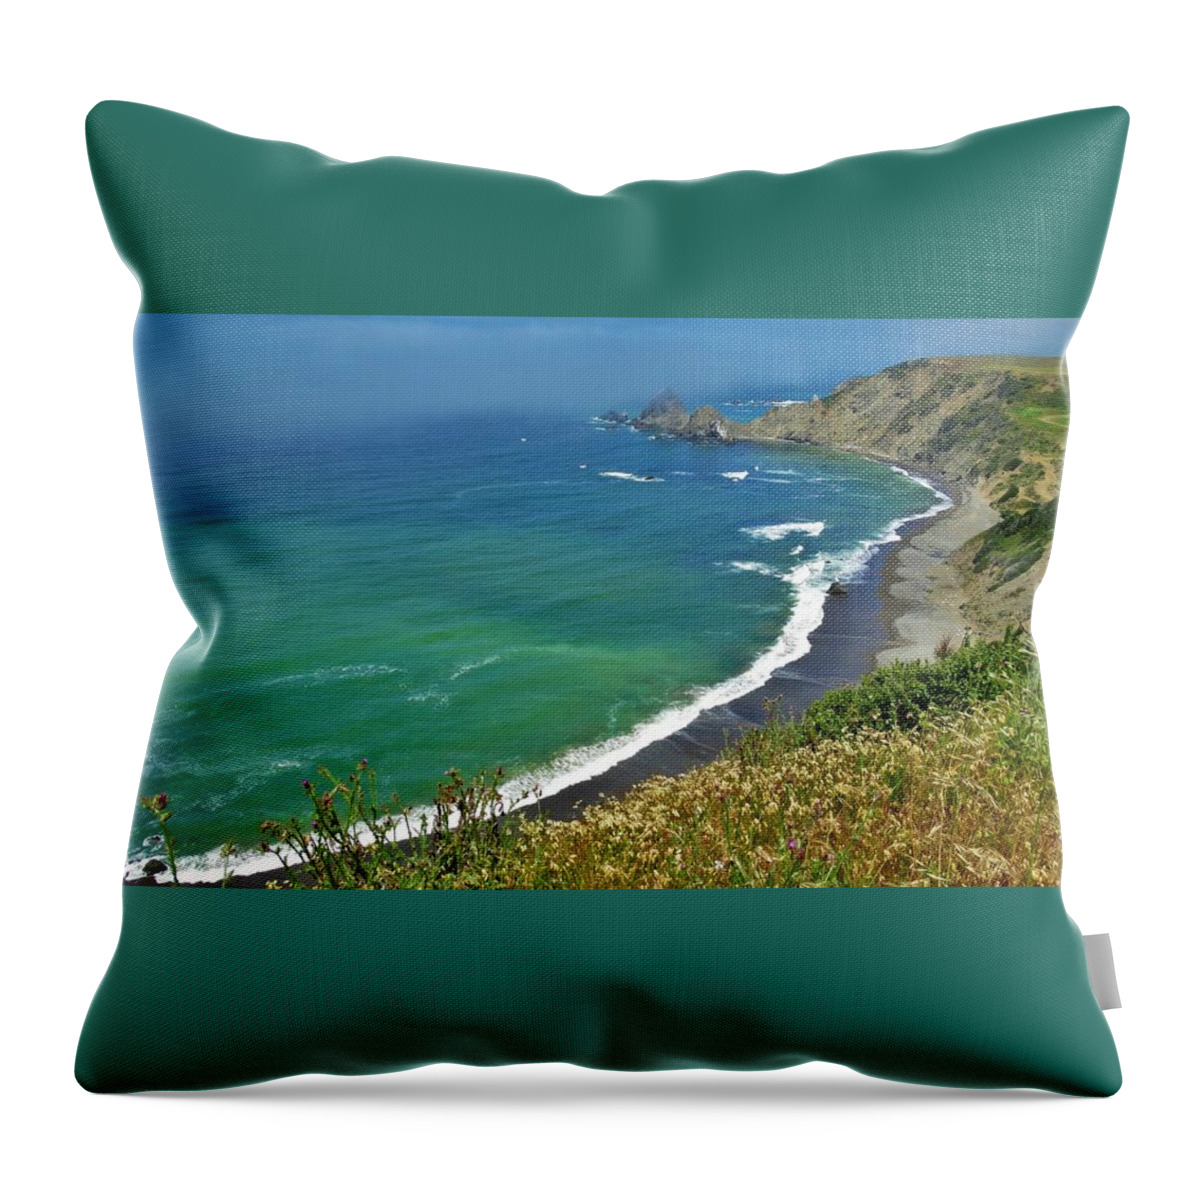 Irish Beach Throw Pillow featuring the photograph Irish Beach ViewPoint by Lisa Dunn